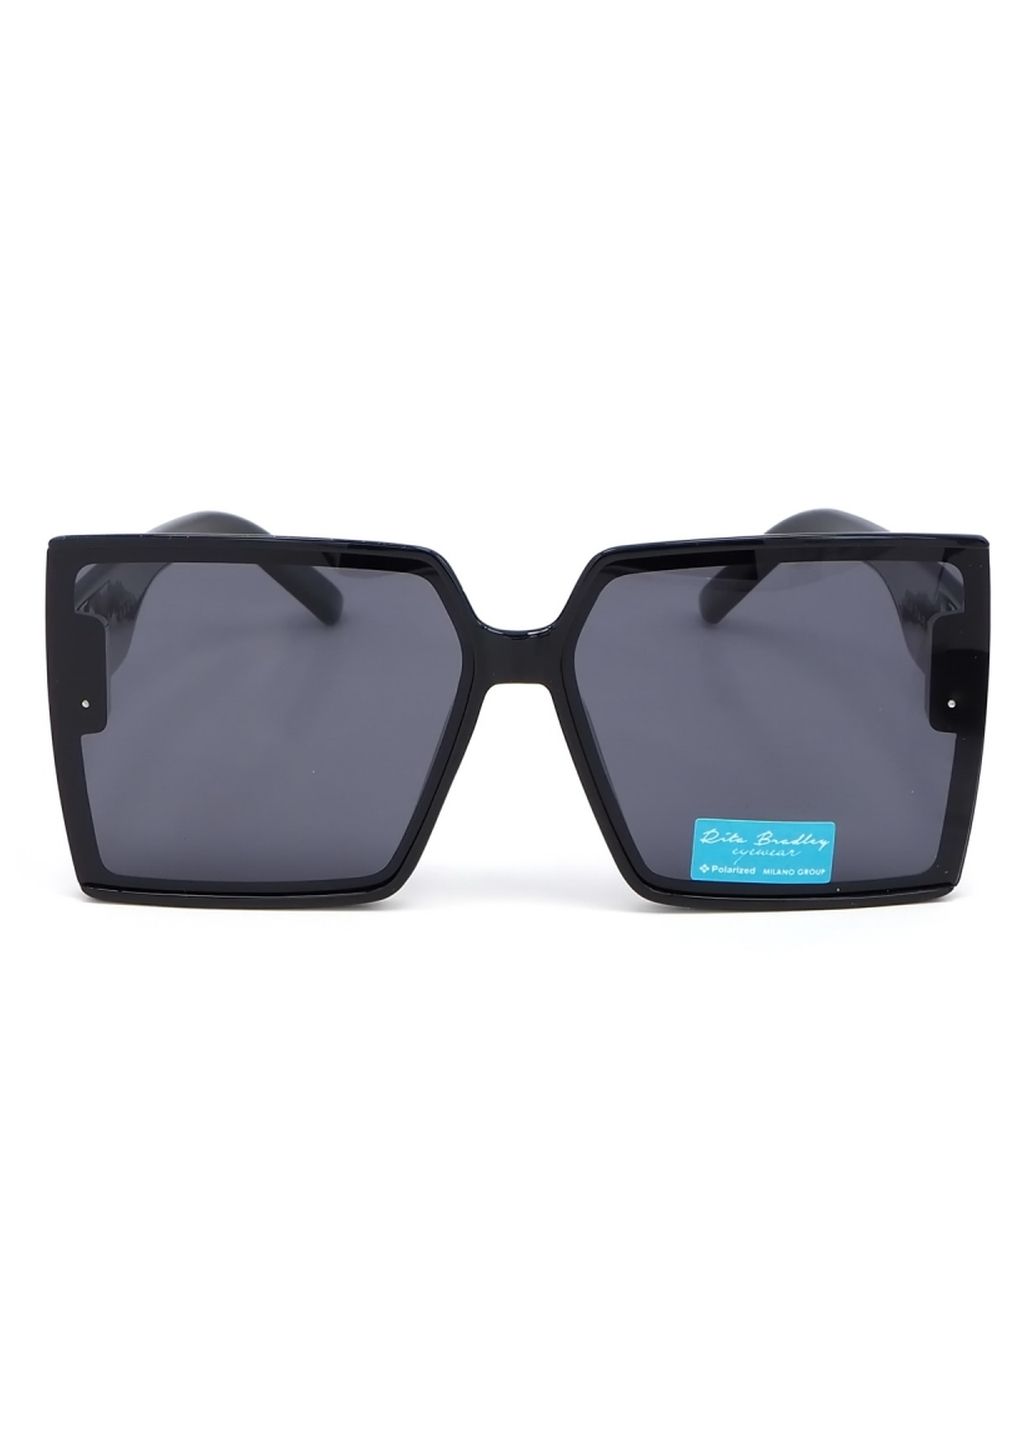 Купить Женские солнцезащитные очки Rita Bradley с поляризацией RB724 112042 в интернет-магазине